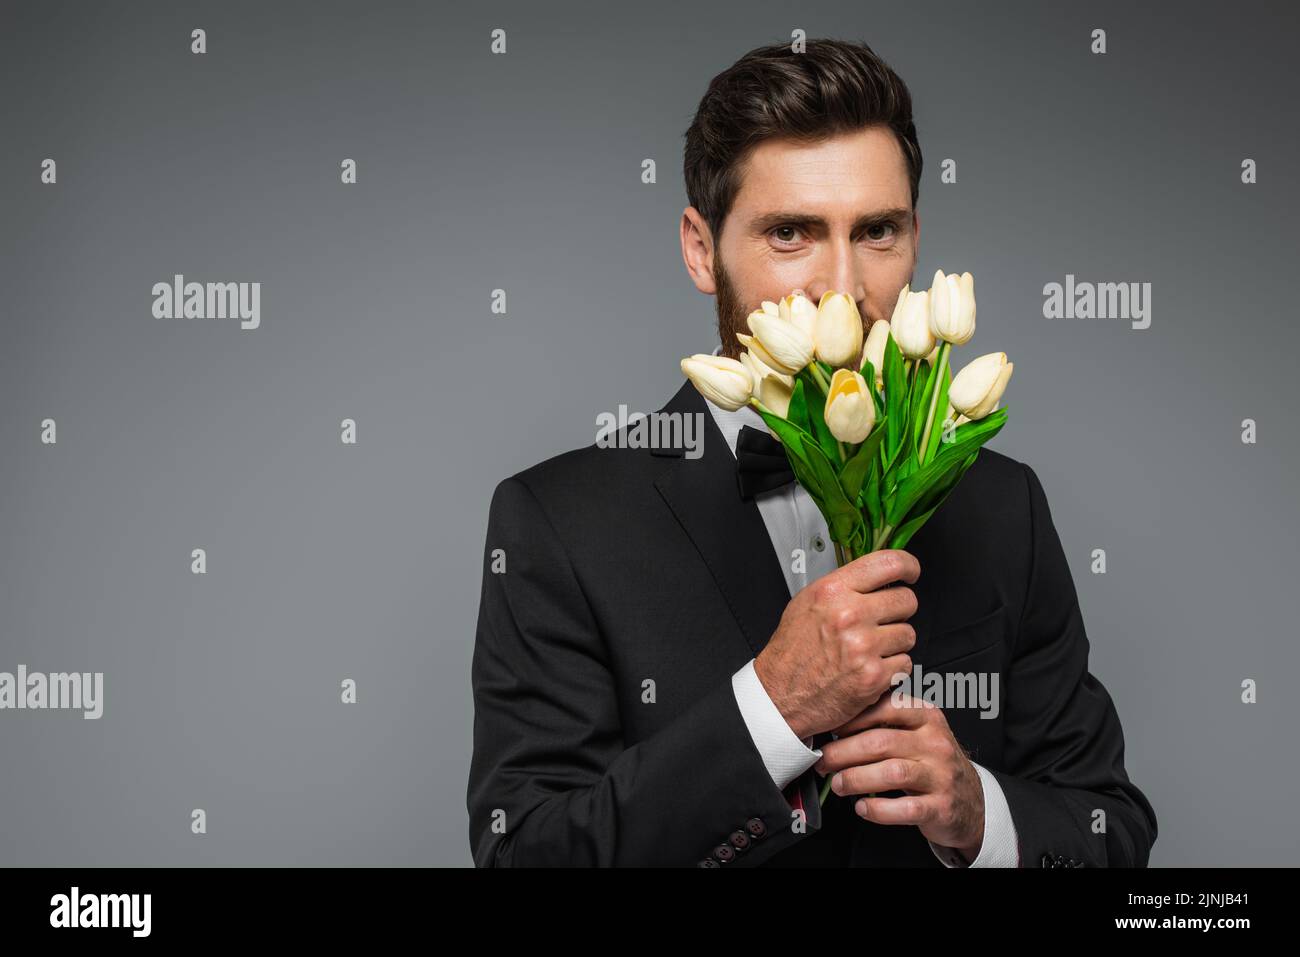 hombre barbudo en elegante tulipanes frescos con olor a esmoquin aislados en gris, imagen de archivo Foto de stock